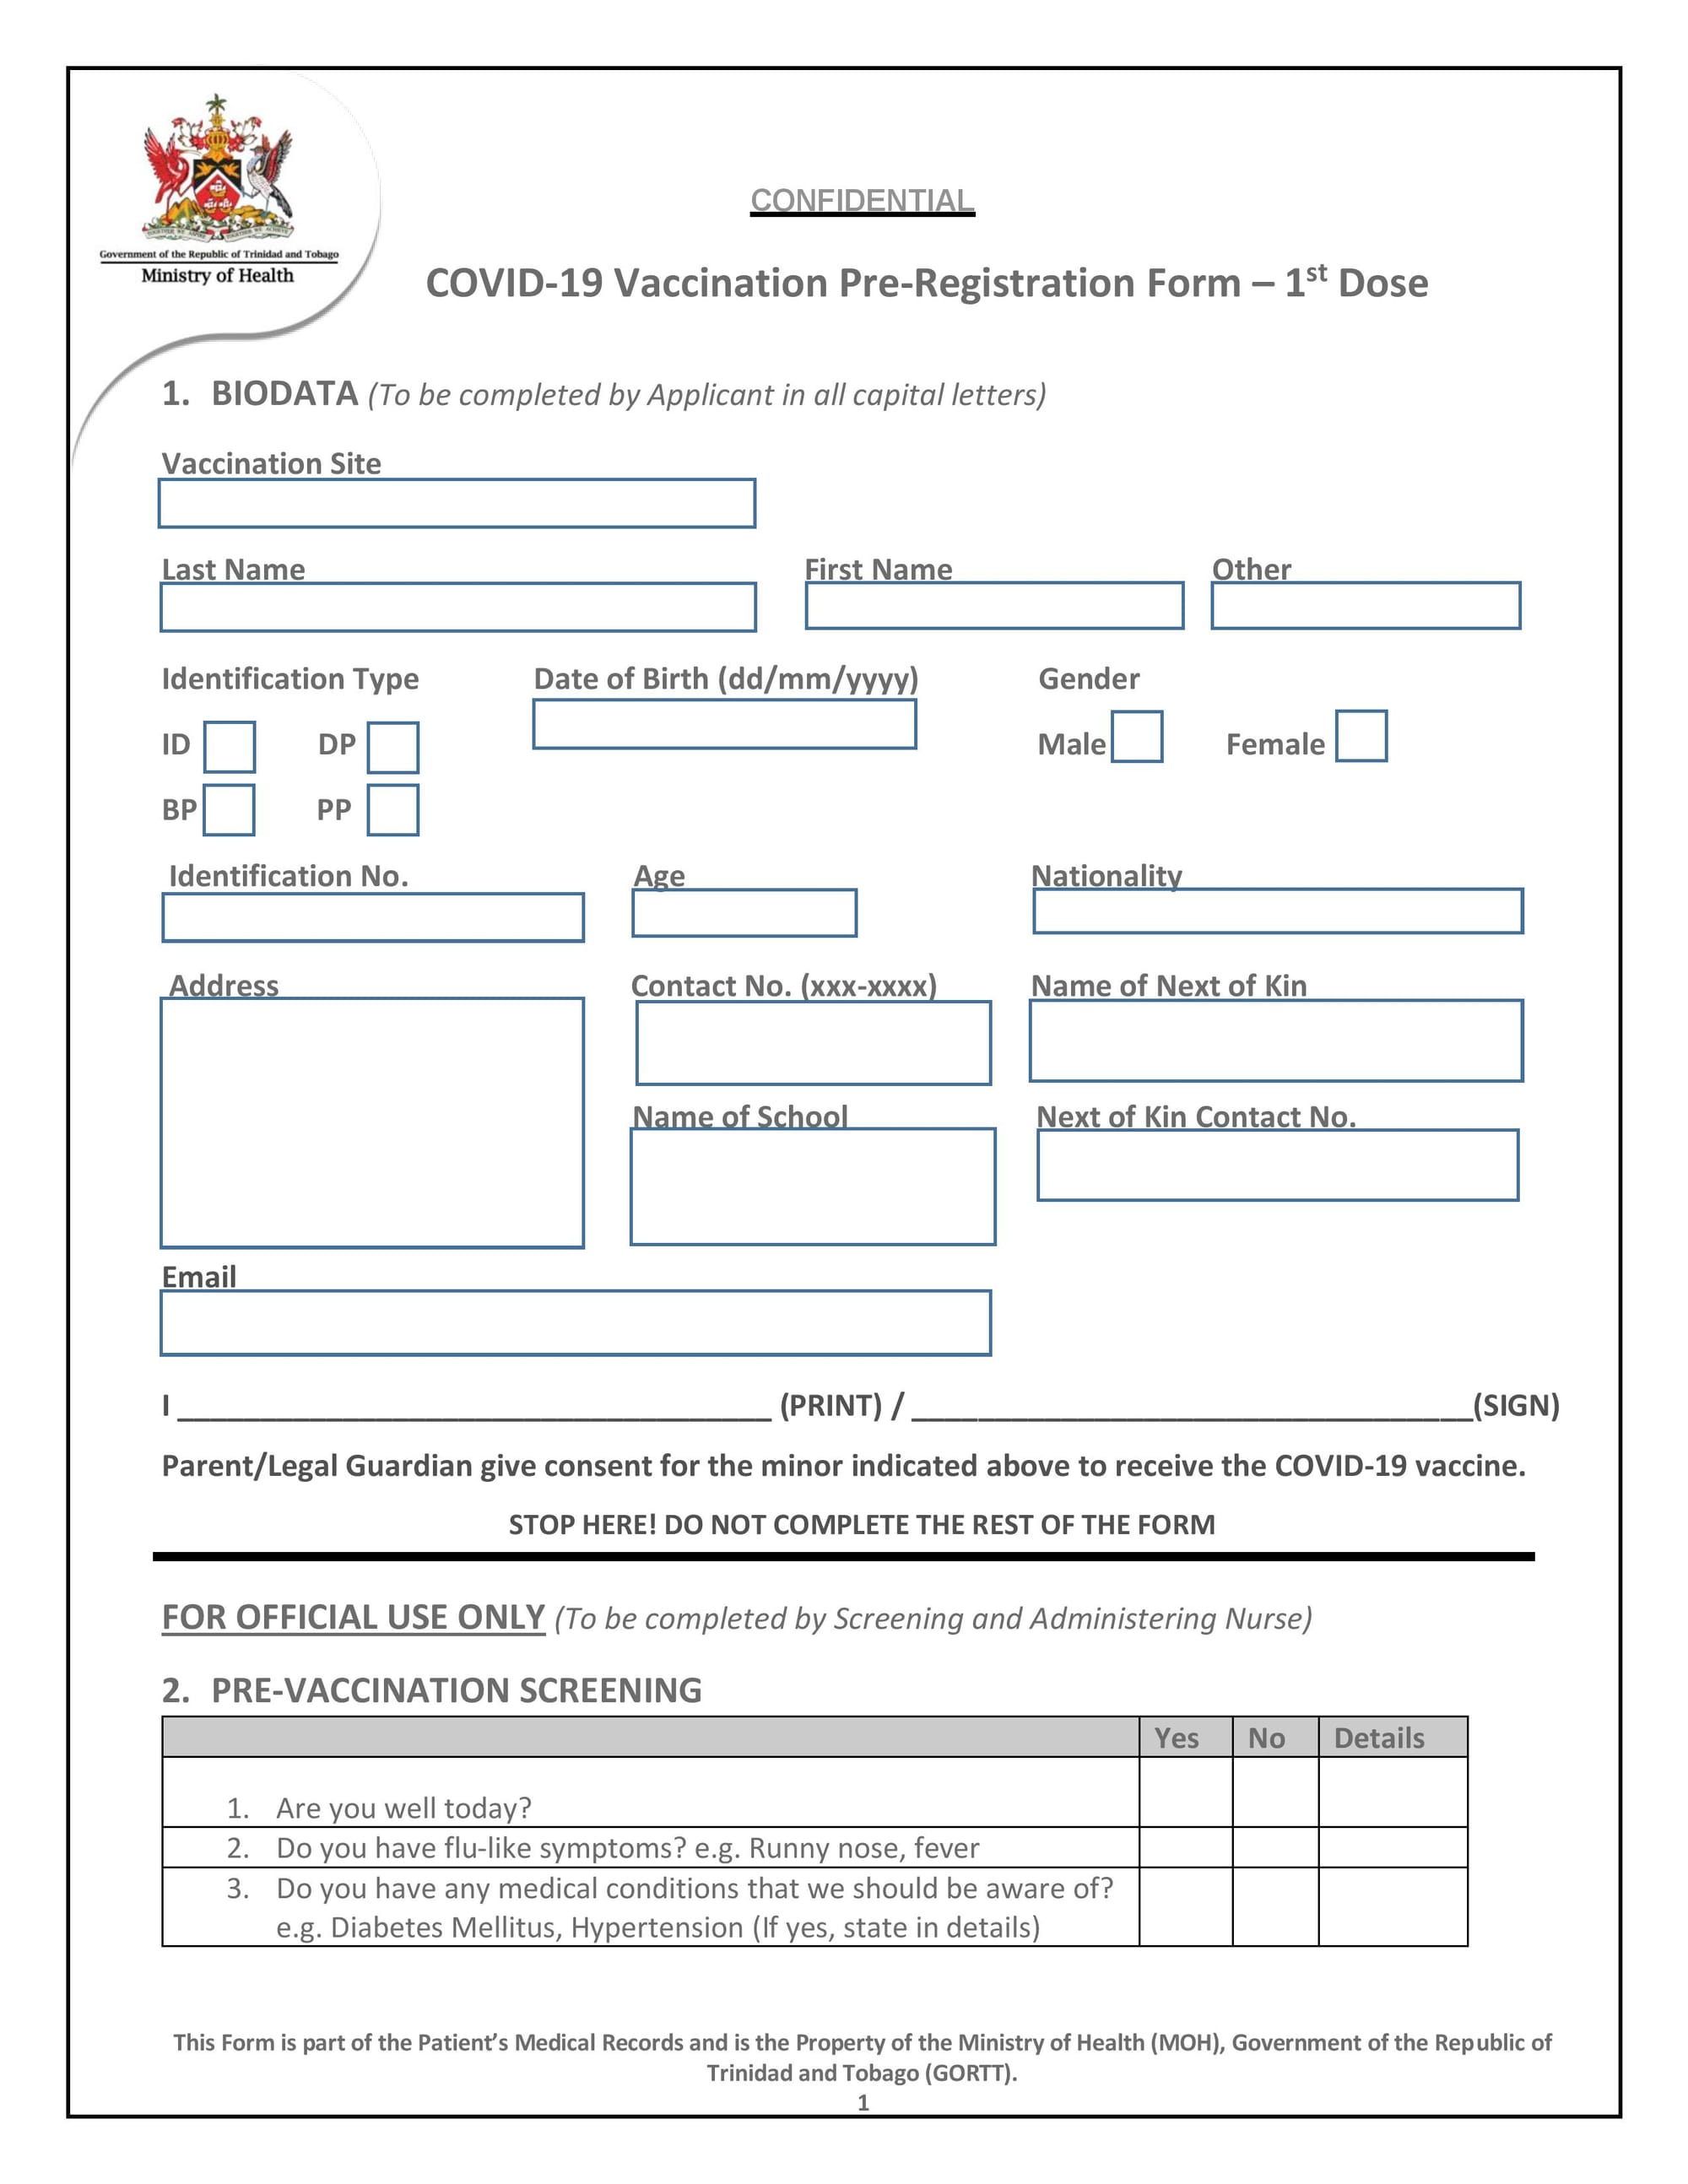 Diseño de formularios